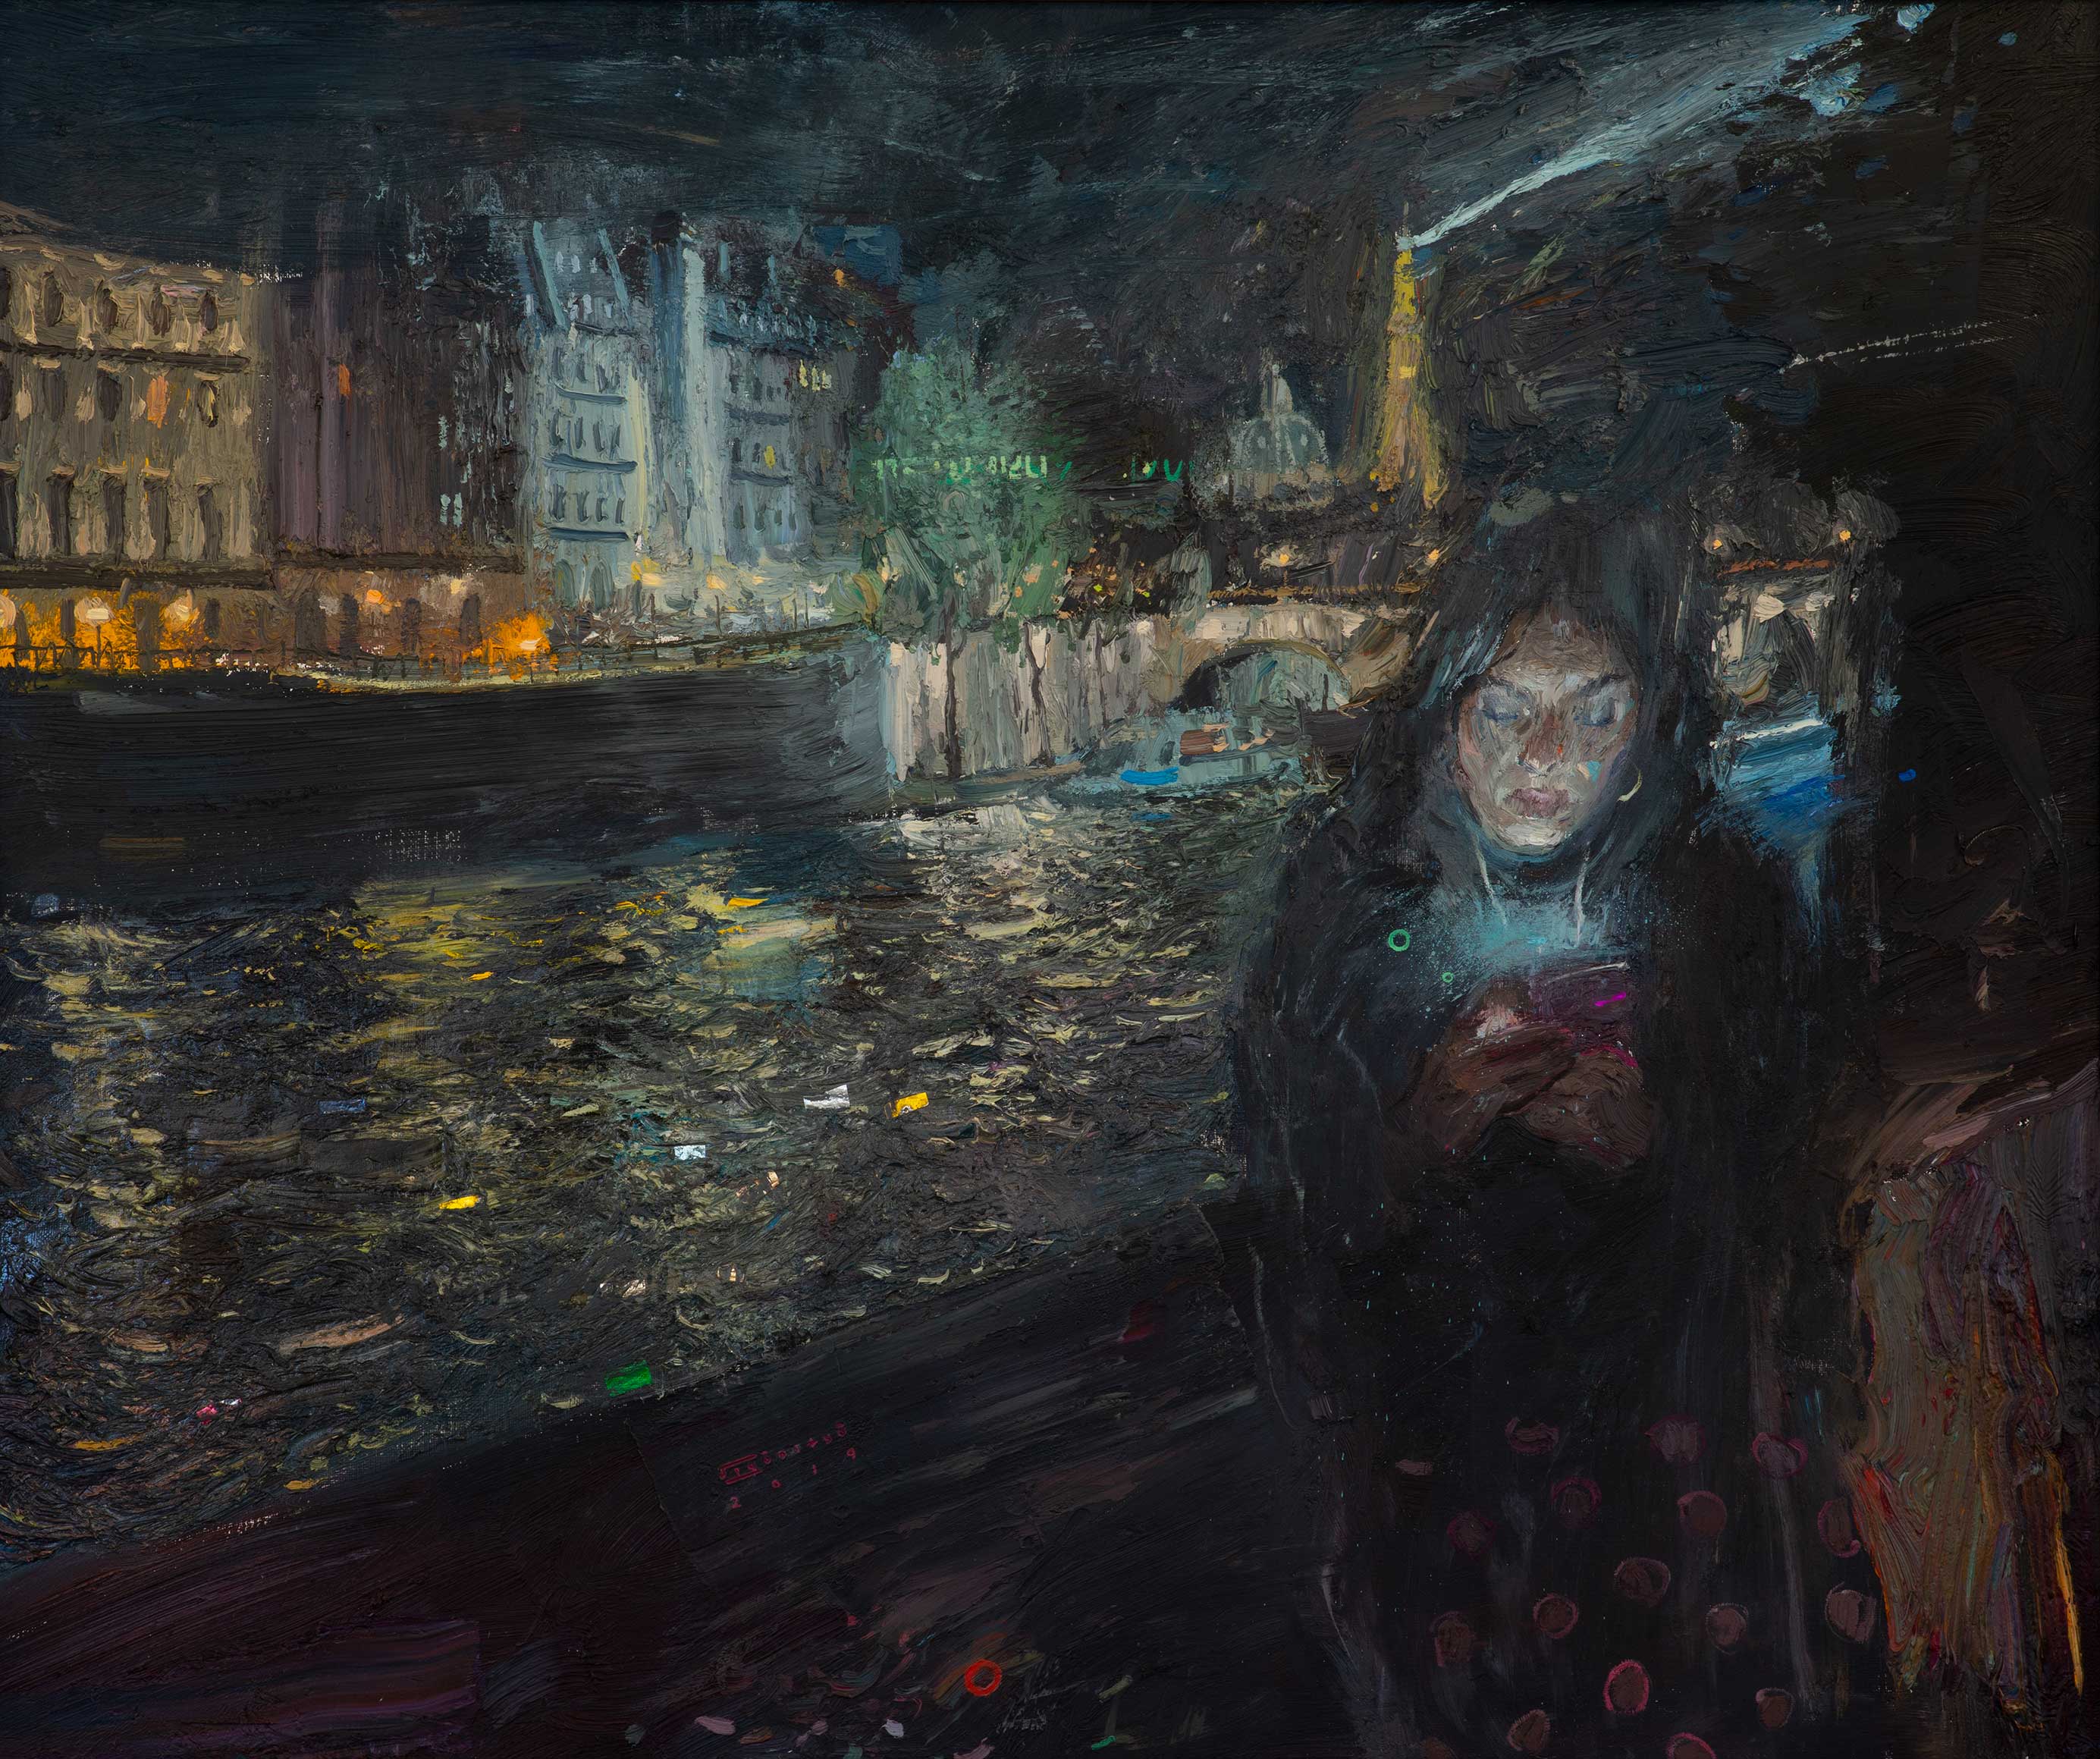 Parisian Girl - 1, Sergey Kiyanitsa, Buy the painting Oil